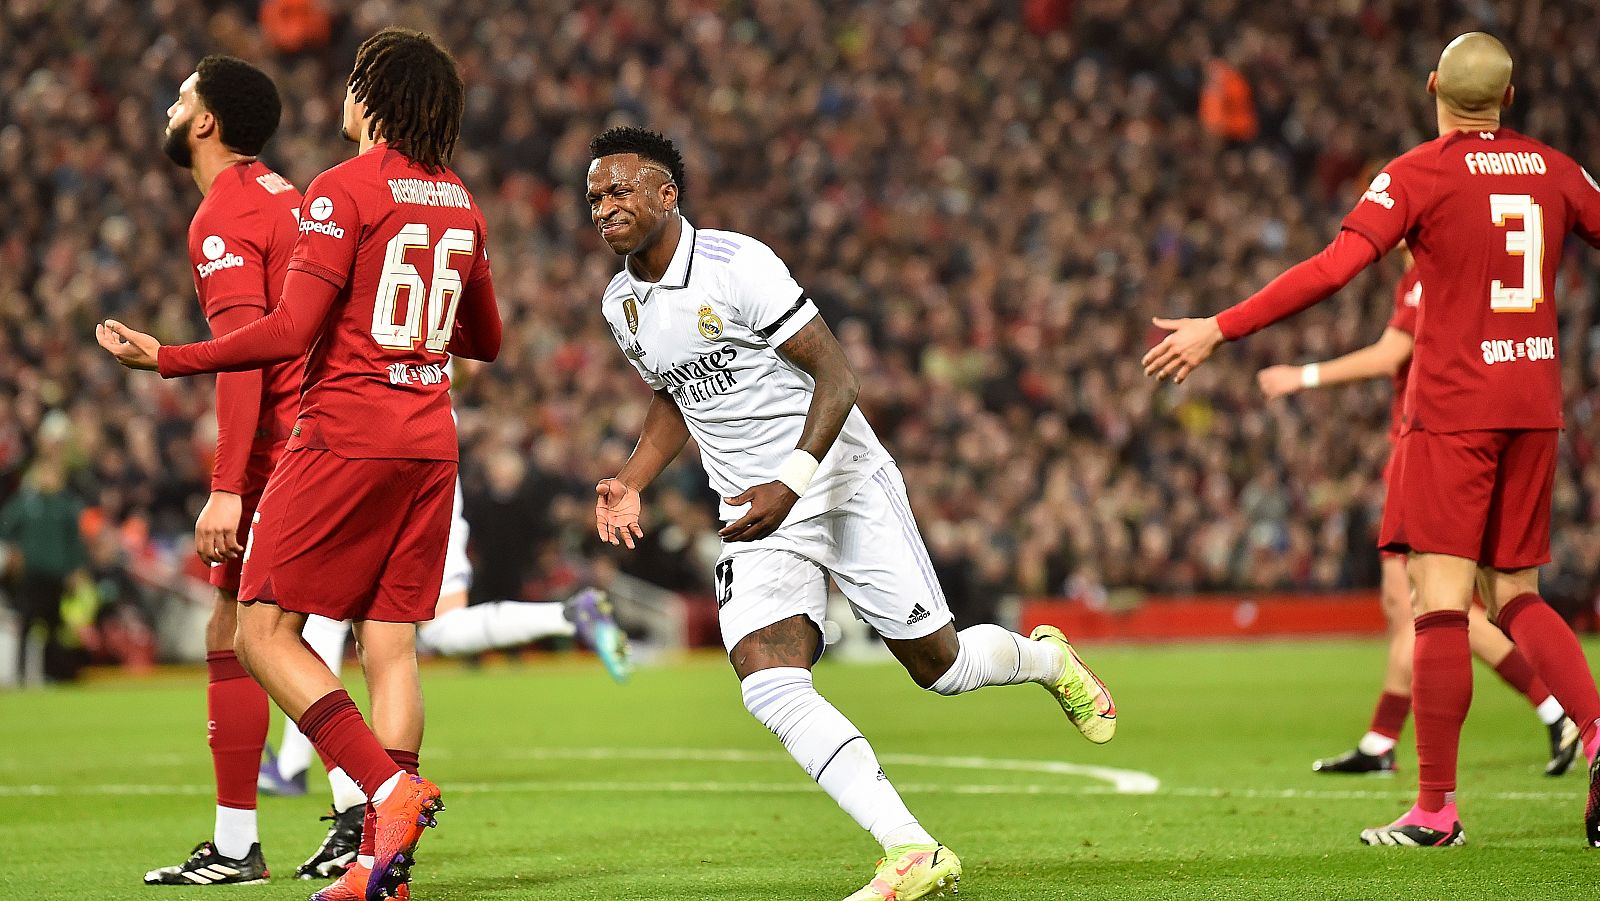 Liverpool - Real Madrid, en directo: Vinicius celebra su segundo gol al Liverpool